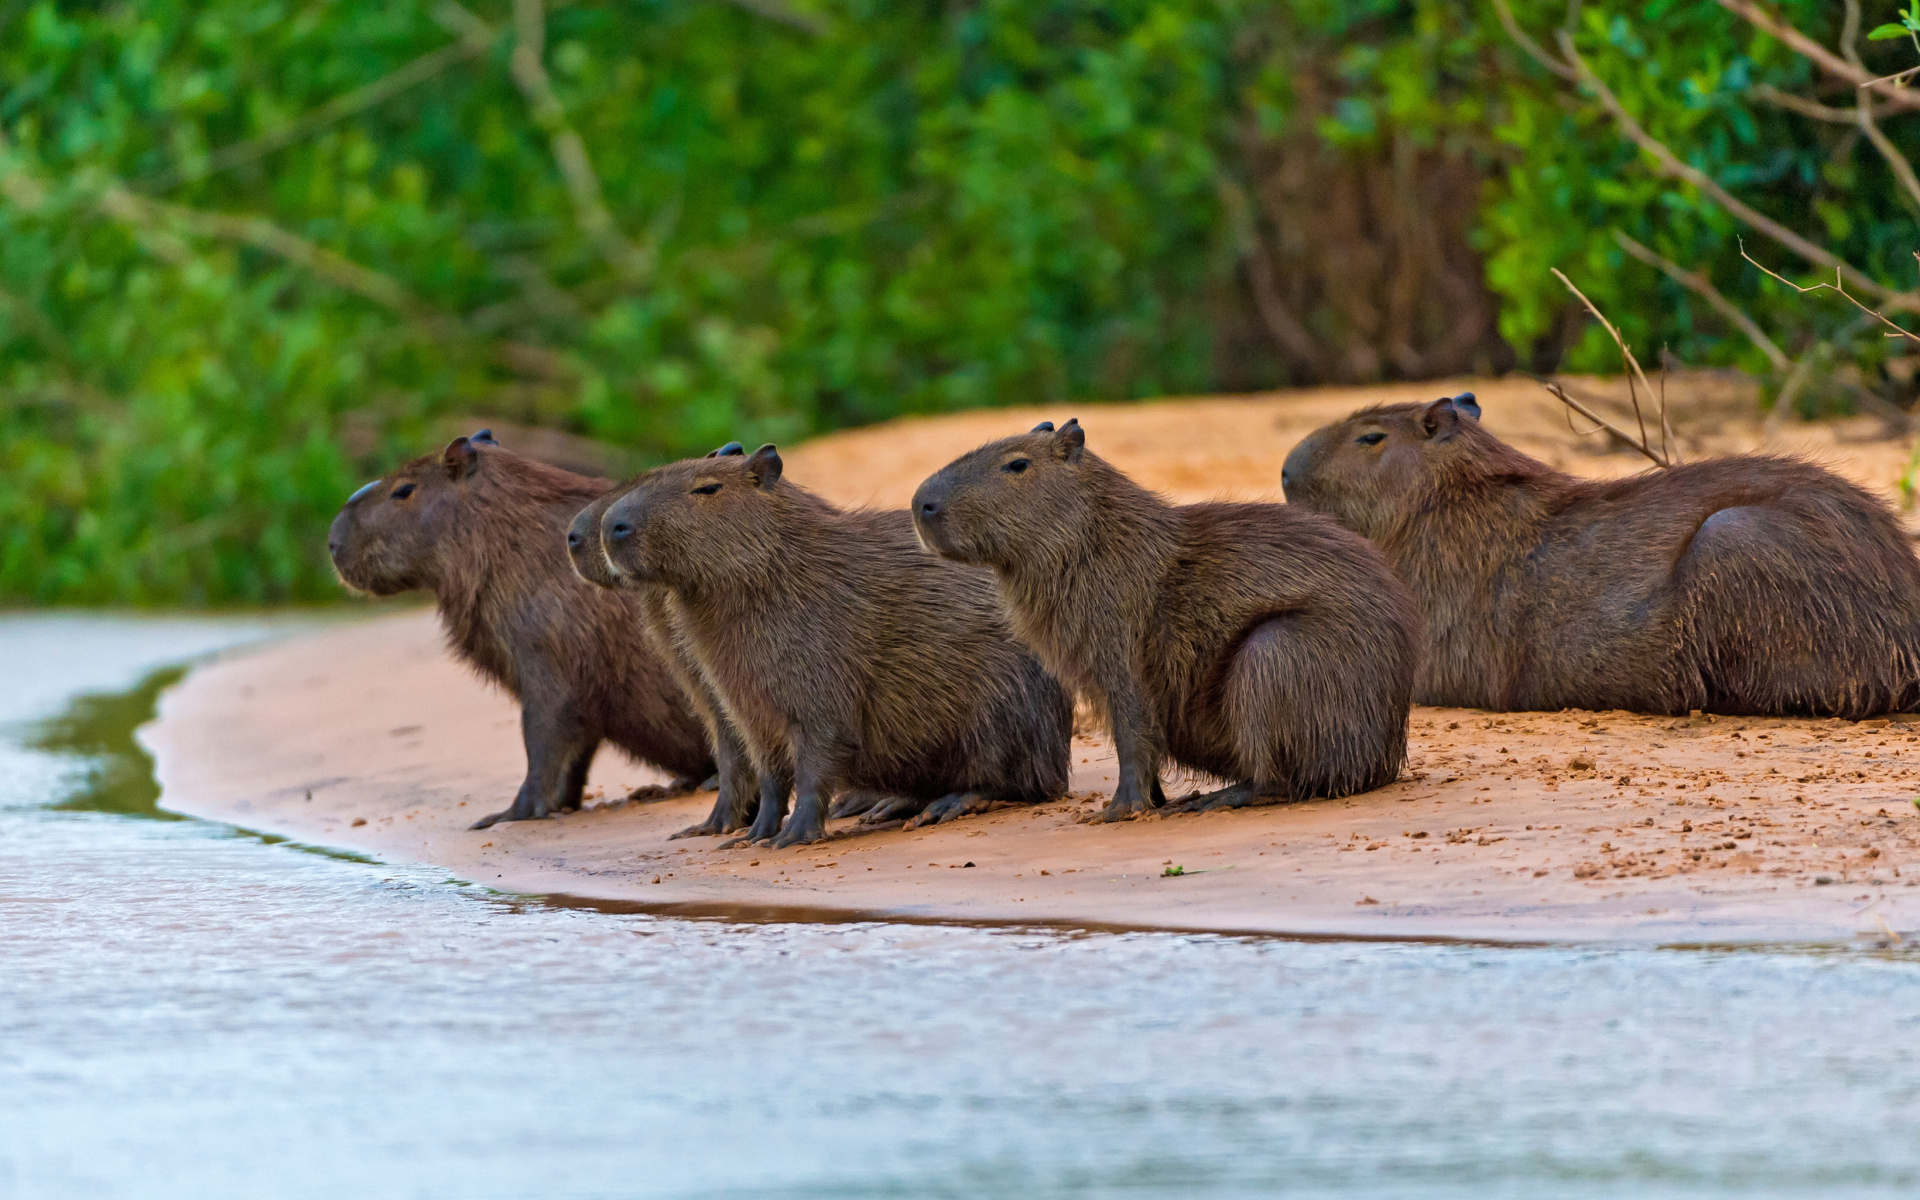 Capybara wallpaper, Widescreen desktop, Rodent picture, Full HD, 1920x1200 HD Desktop